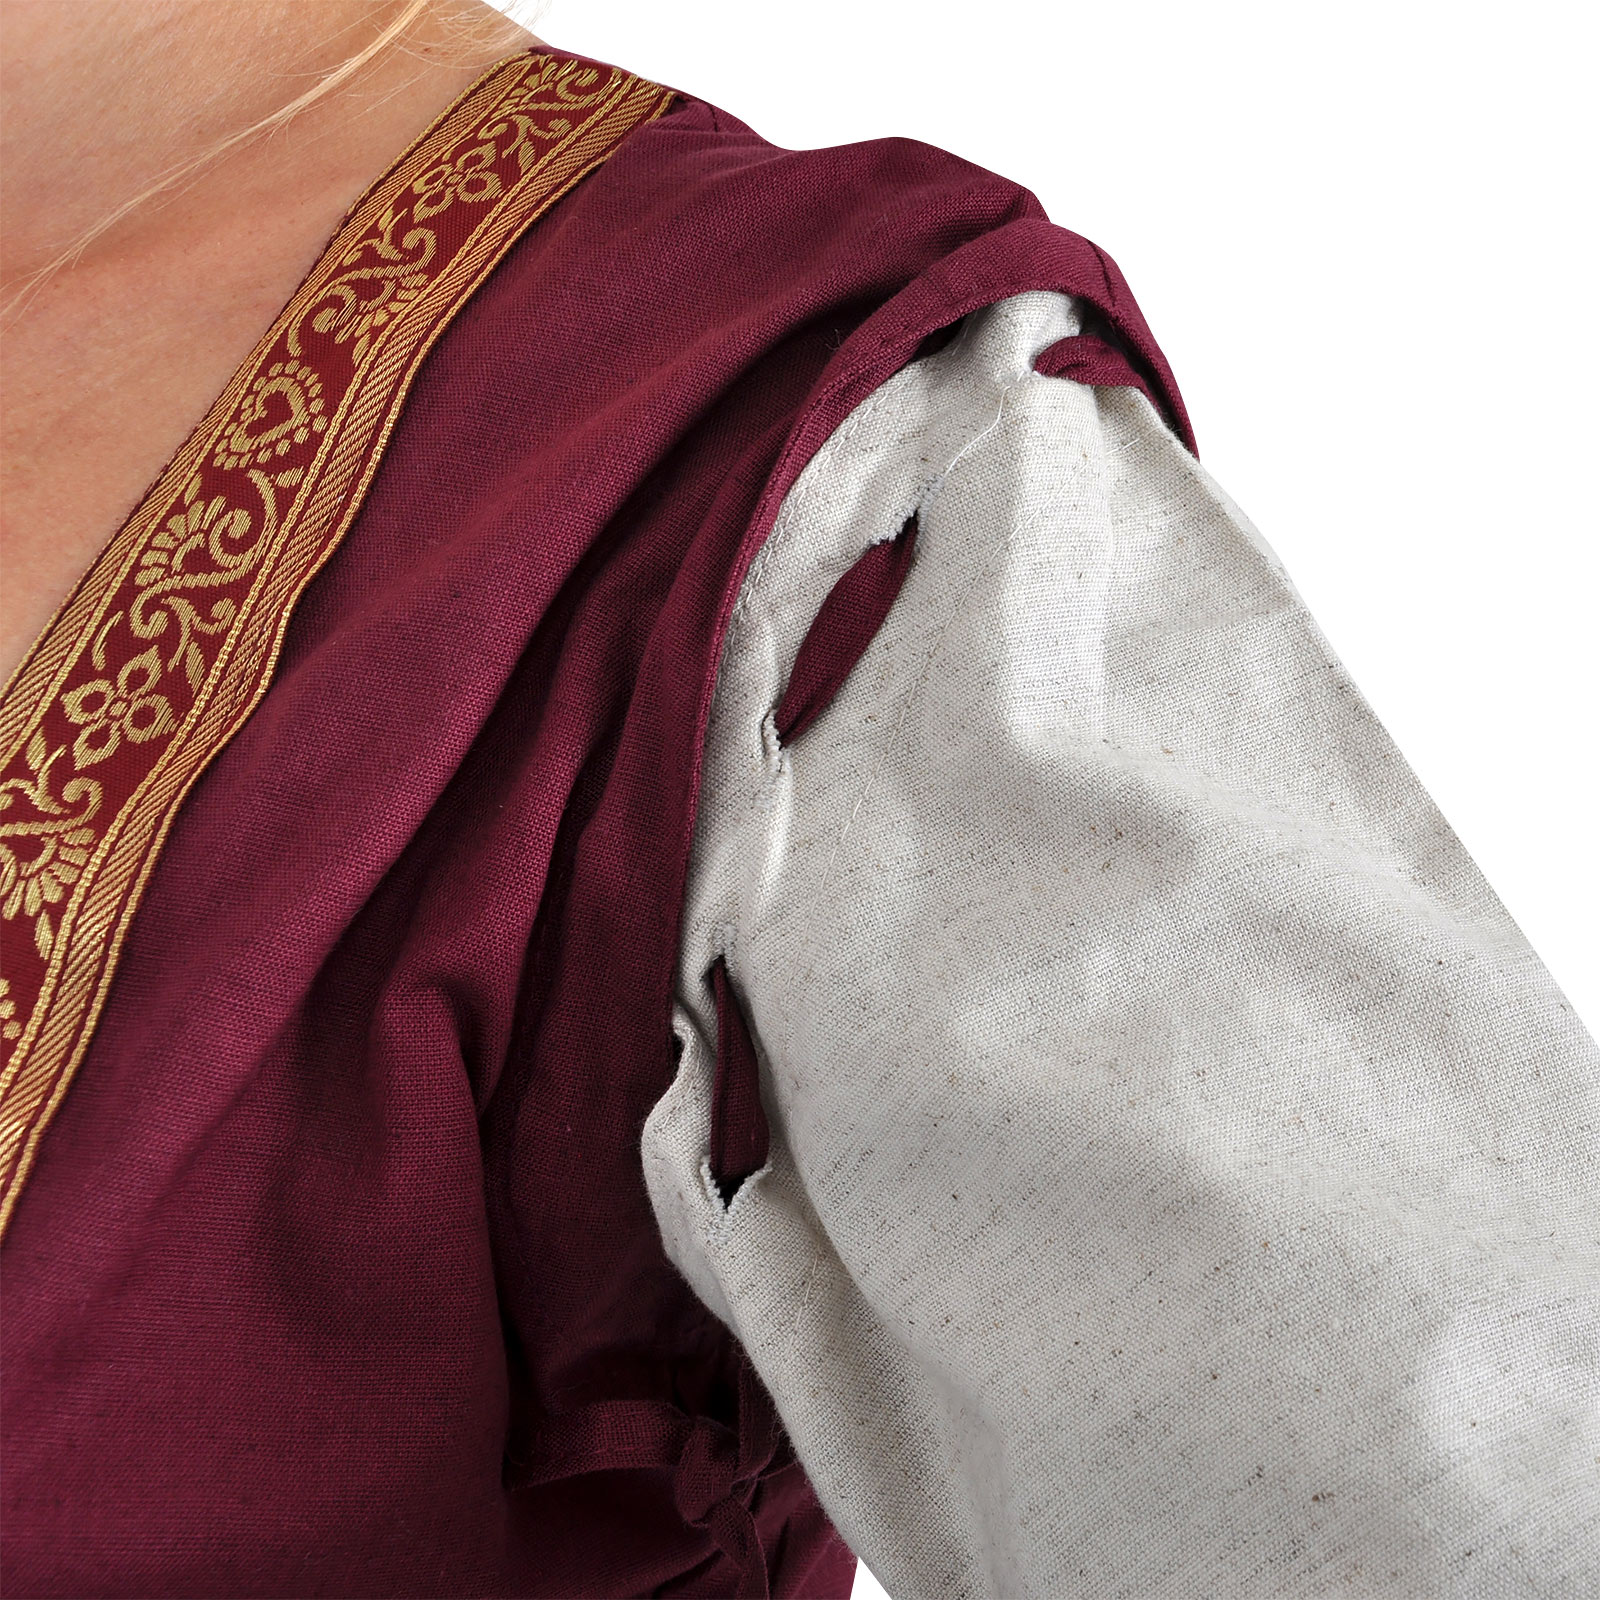 Mittelalter Kleid Applonia mit abnehmbaren Ärmeln natur-bordeaux